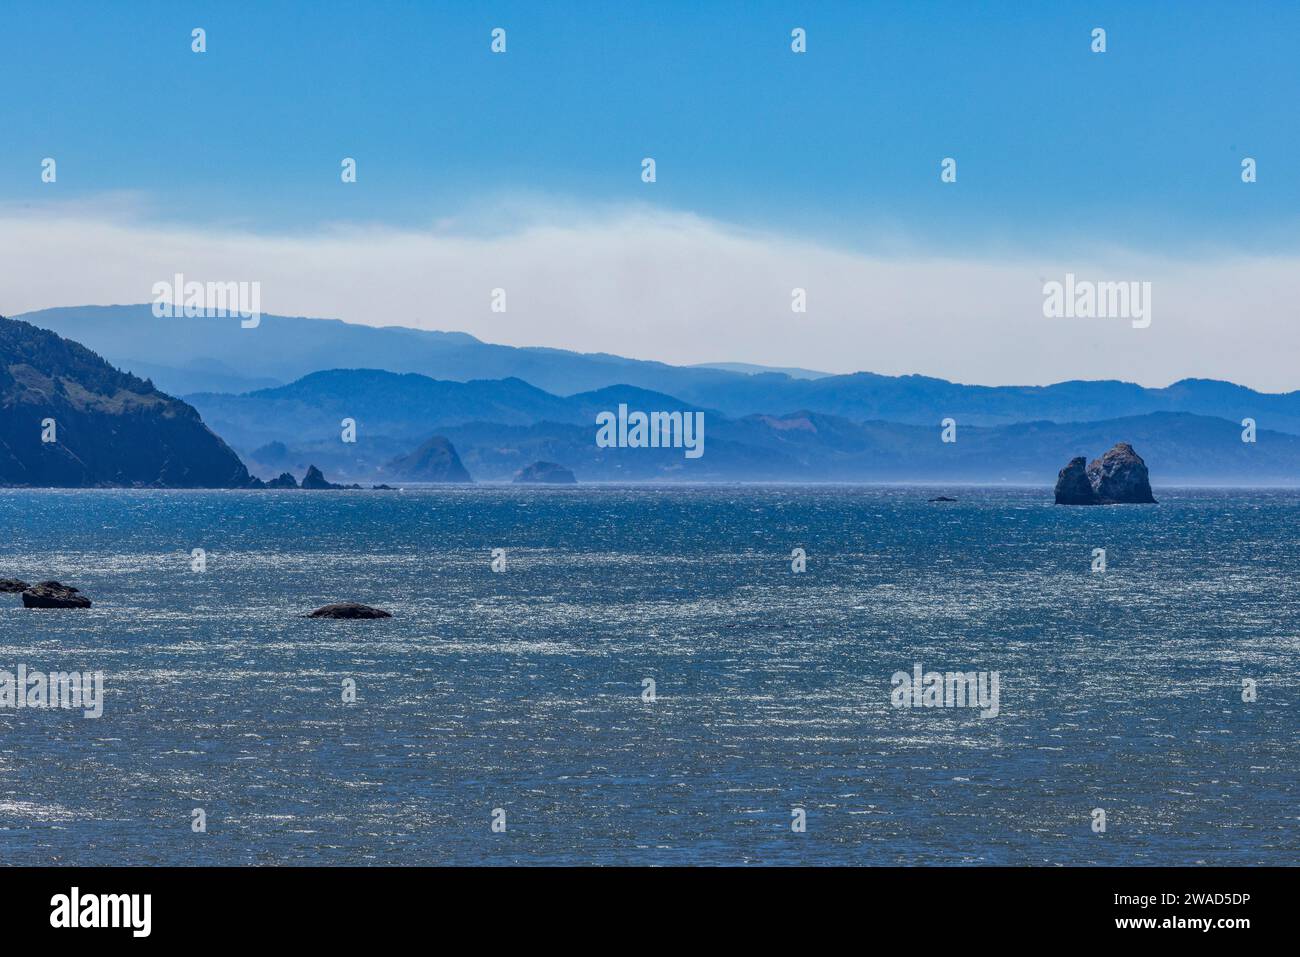 USA, Oregon, Bandon, Coast landscape and rippled sea Stock Photo